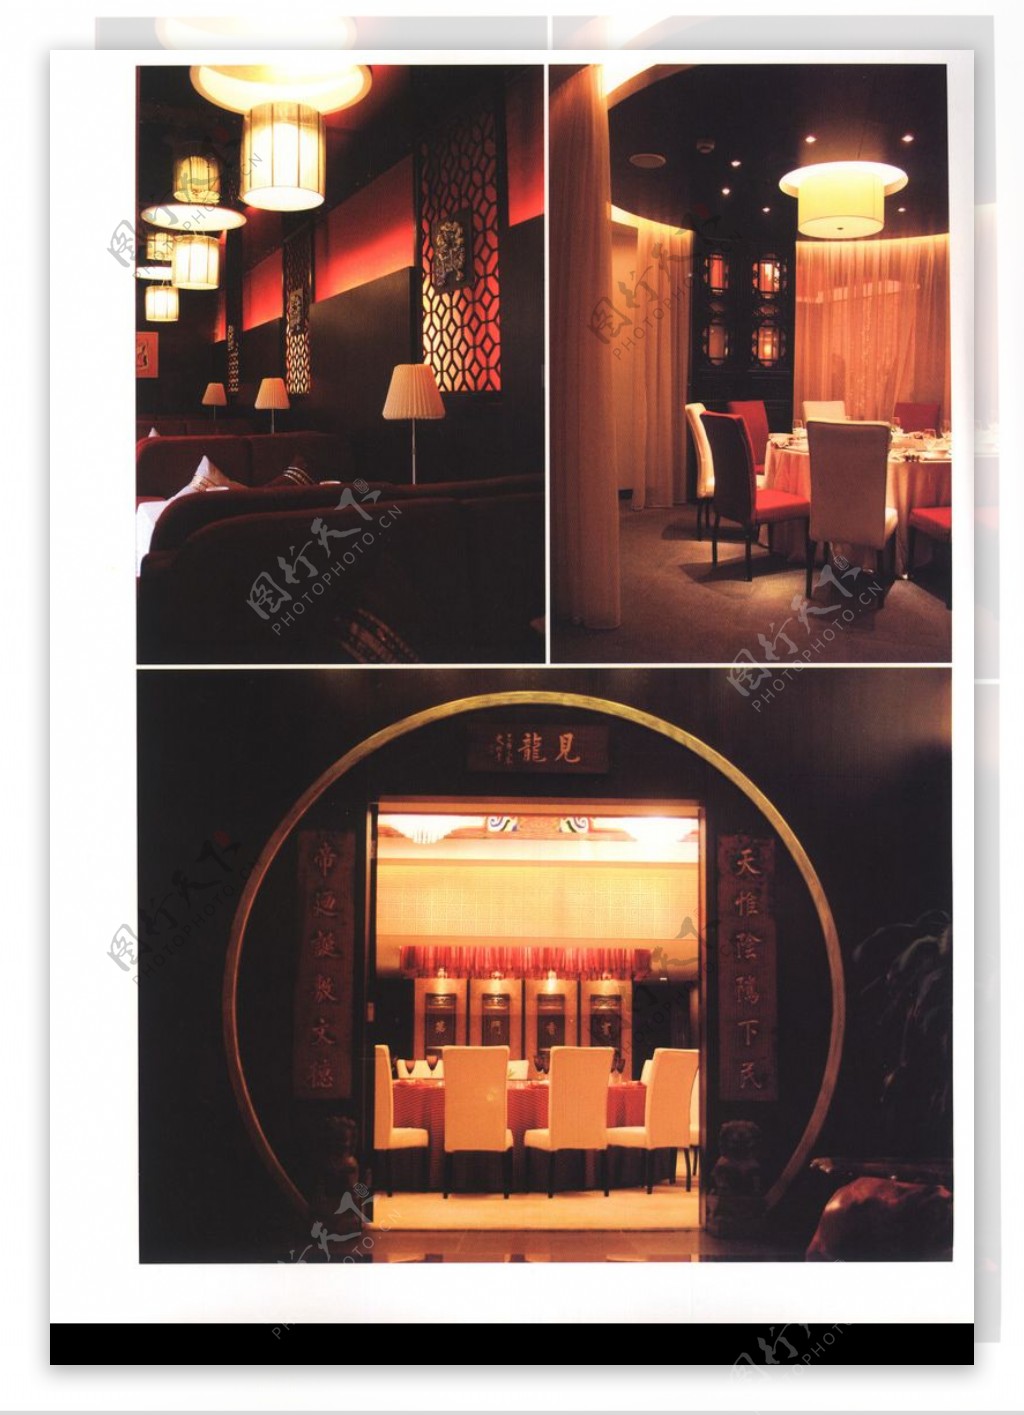 亚太室内设计年鉴2007餐馆酒吧0137